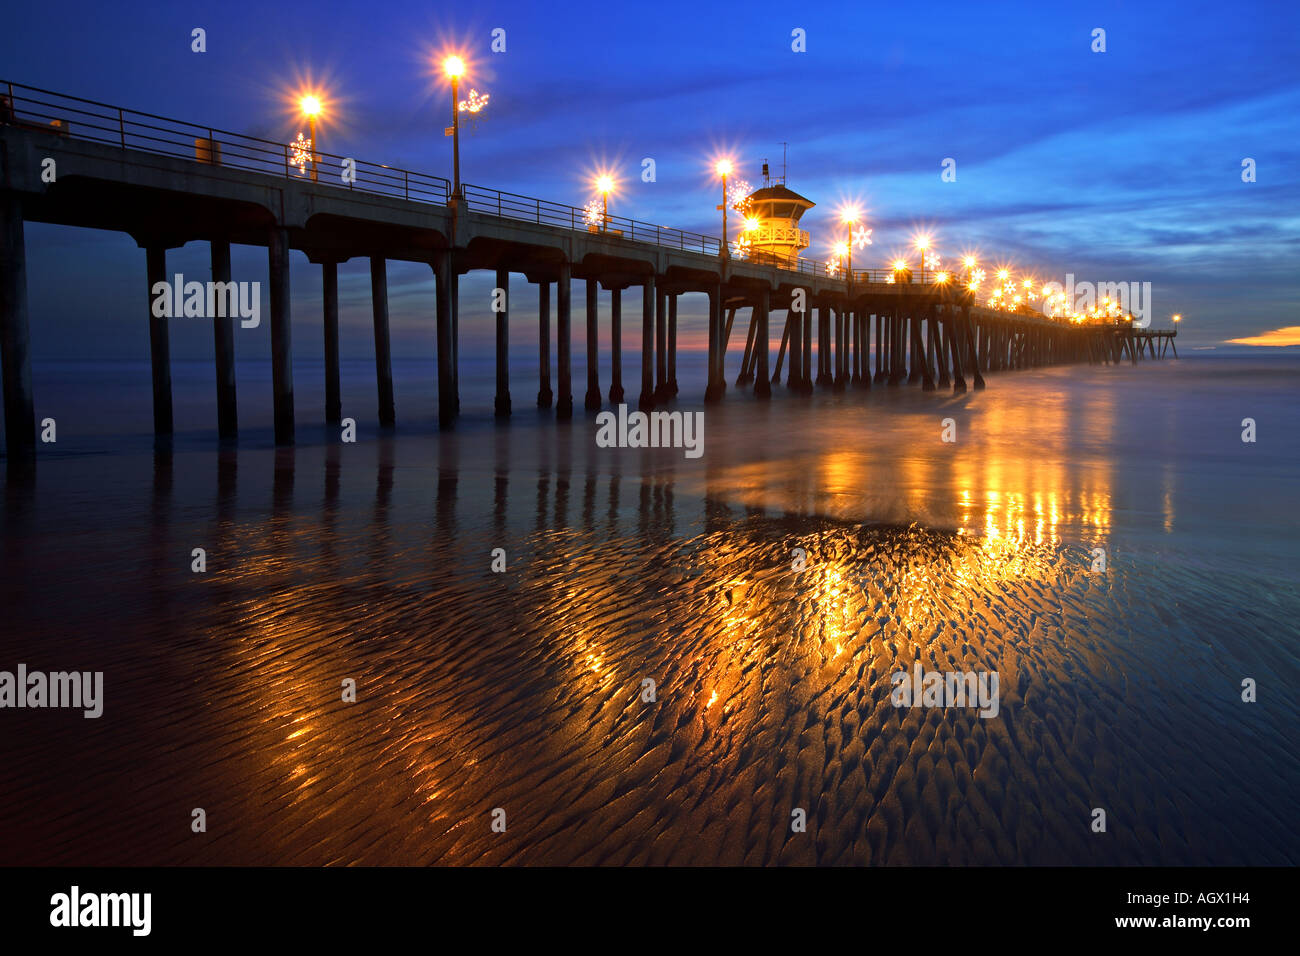 Lumières de Noël sur la plage et jetée Hunington, Hunington Beach, Orange County, Californie, Etats-Unis, USA Banque D'Images